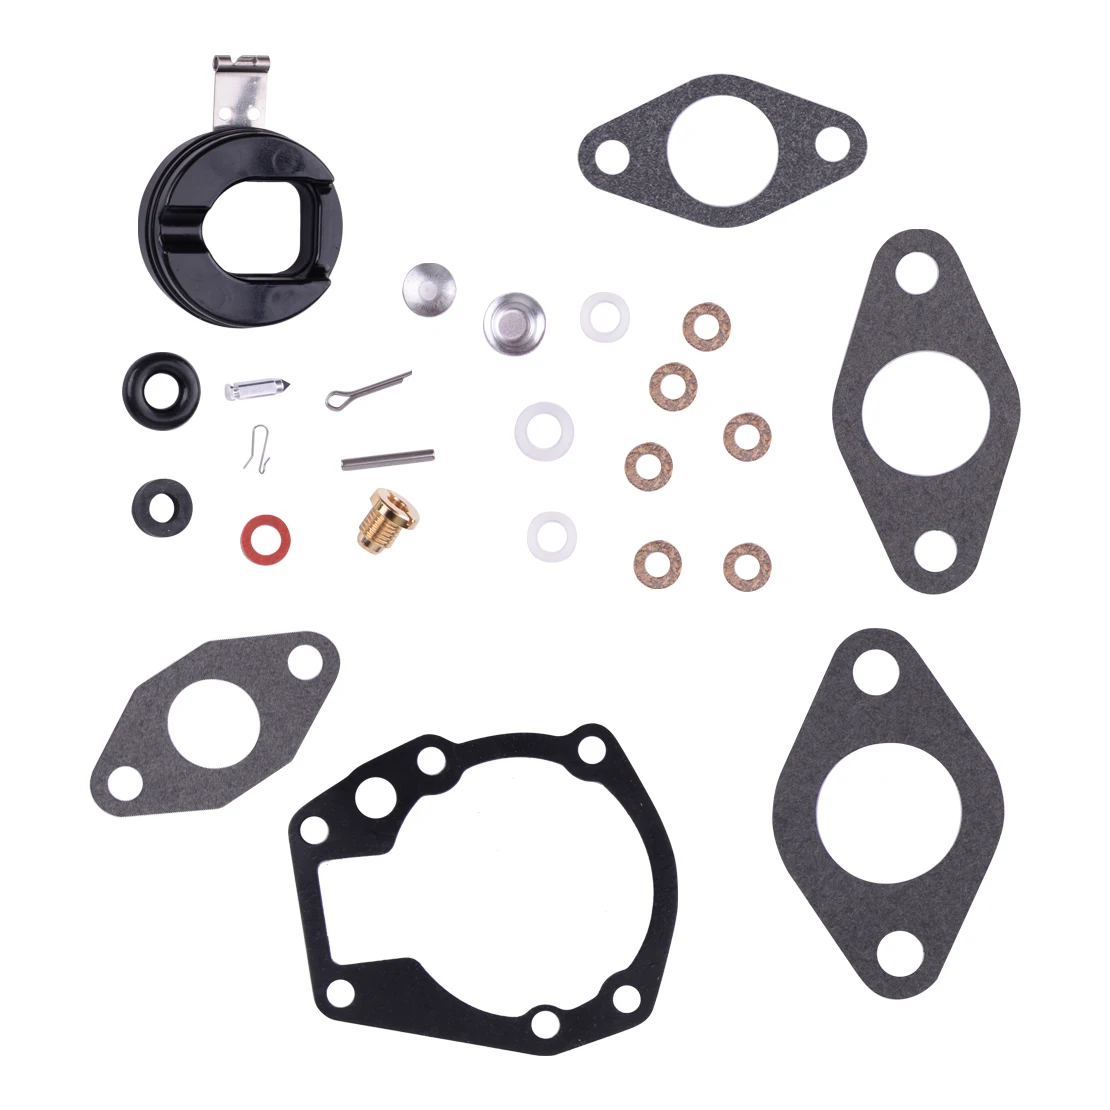 Carburetor Repair Rebuild Kit Fit for Johnson/Evinrude 3hp 5.5hp 6hp 7.5hp 10hp 439071 0439071 383052 777721 382047 382048